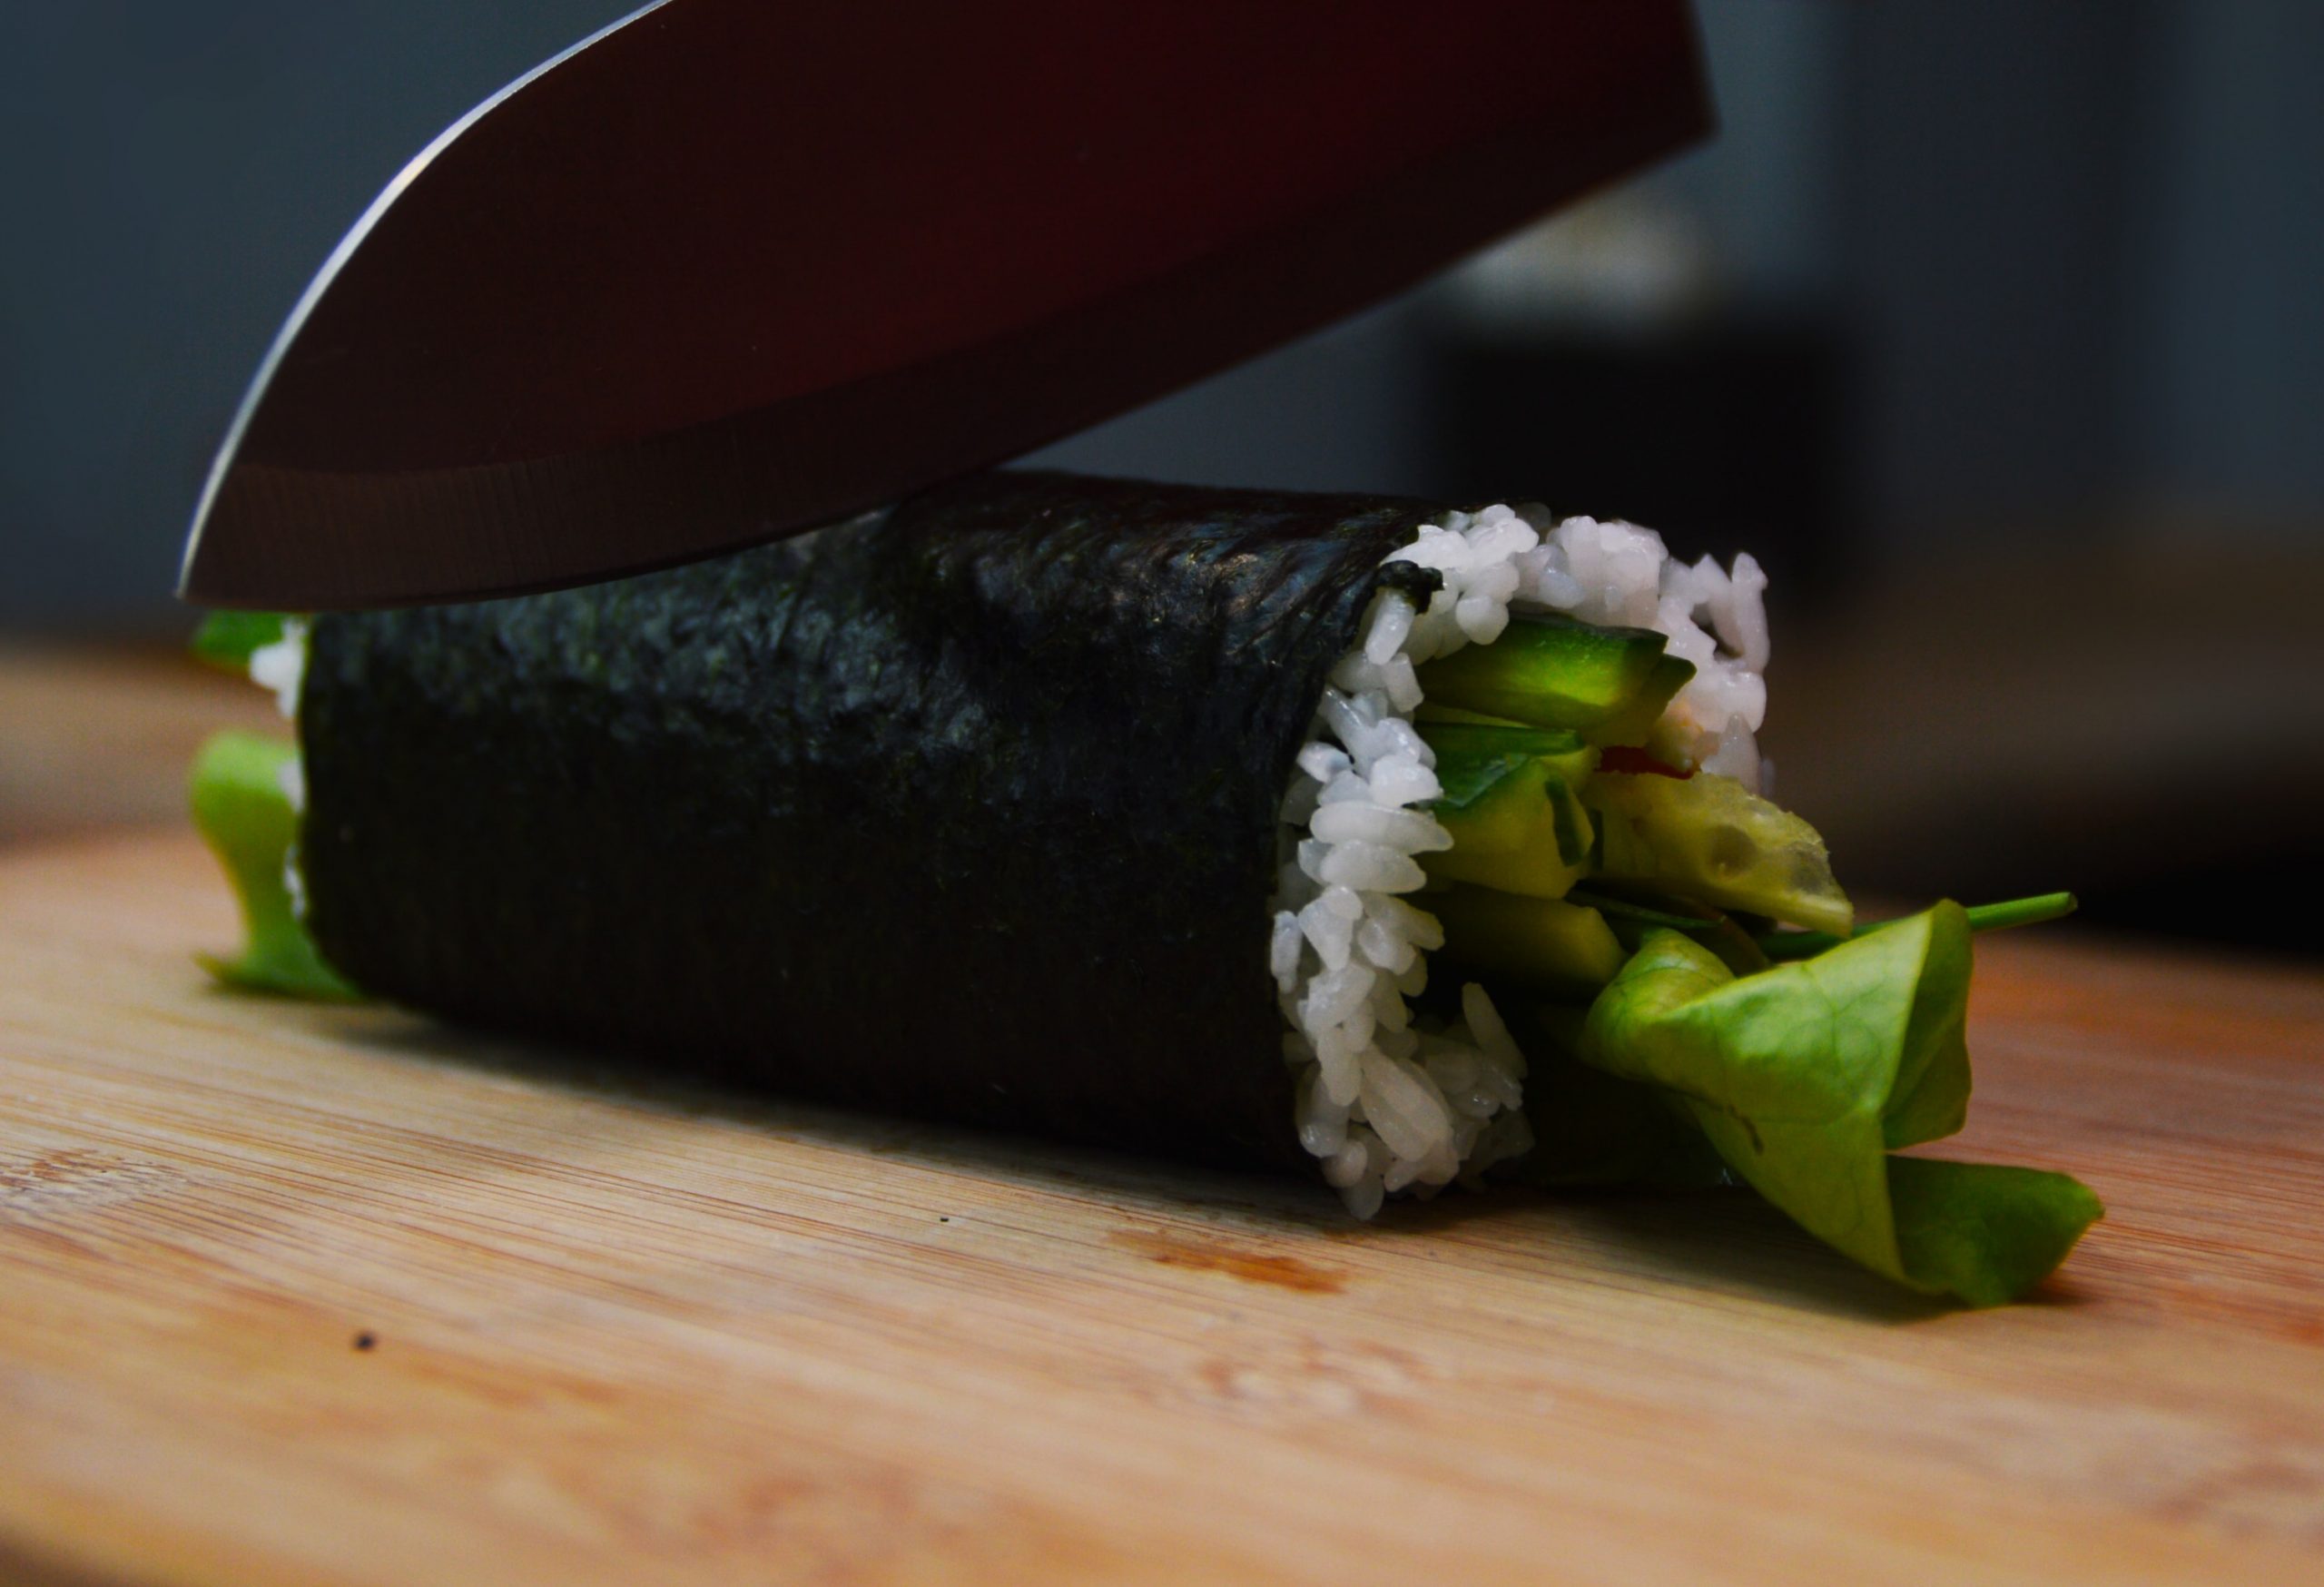 Resultado del sushi enrollado en el makisu